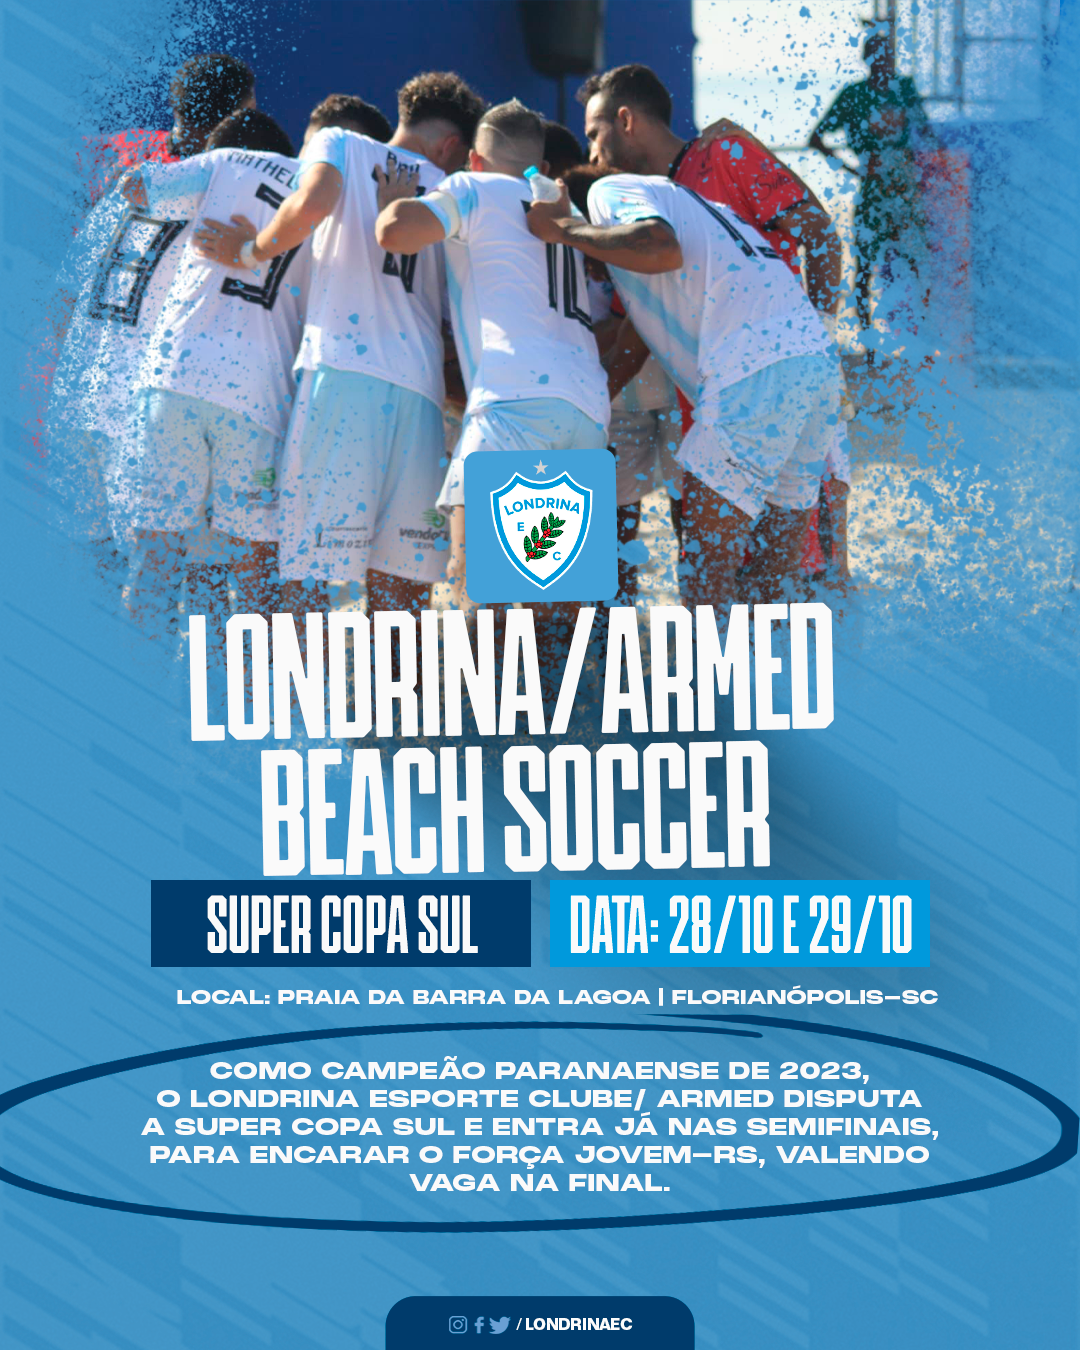 Londrina Beach Soccer disputa a Super Copa Sul